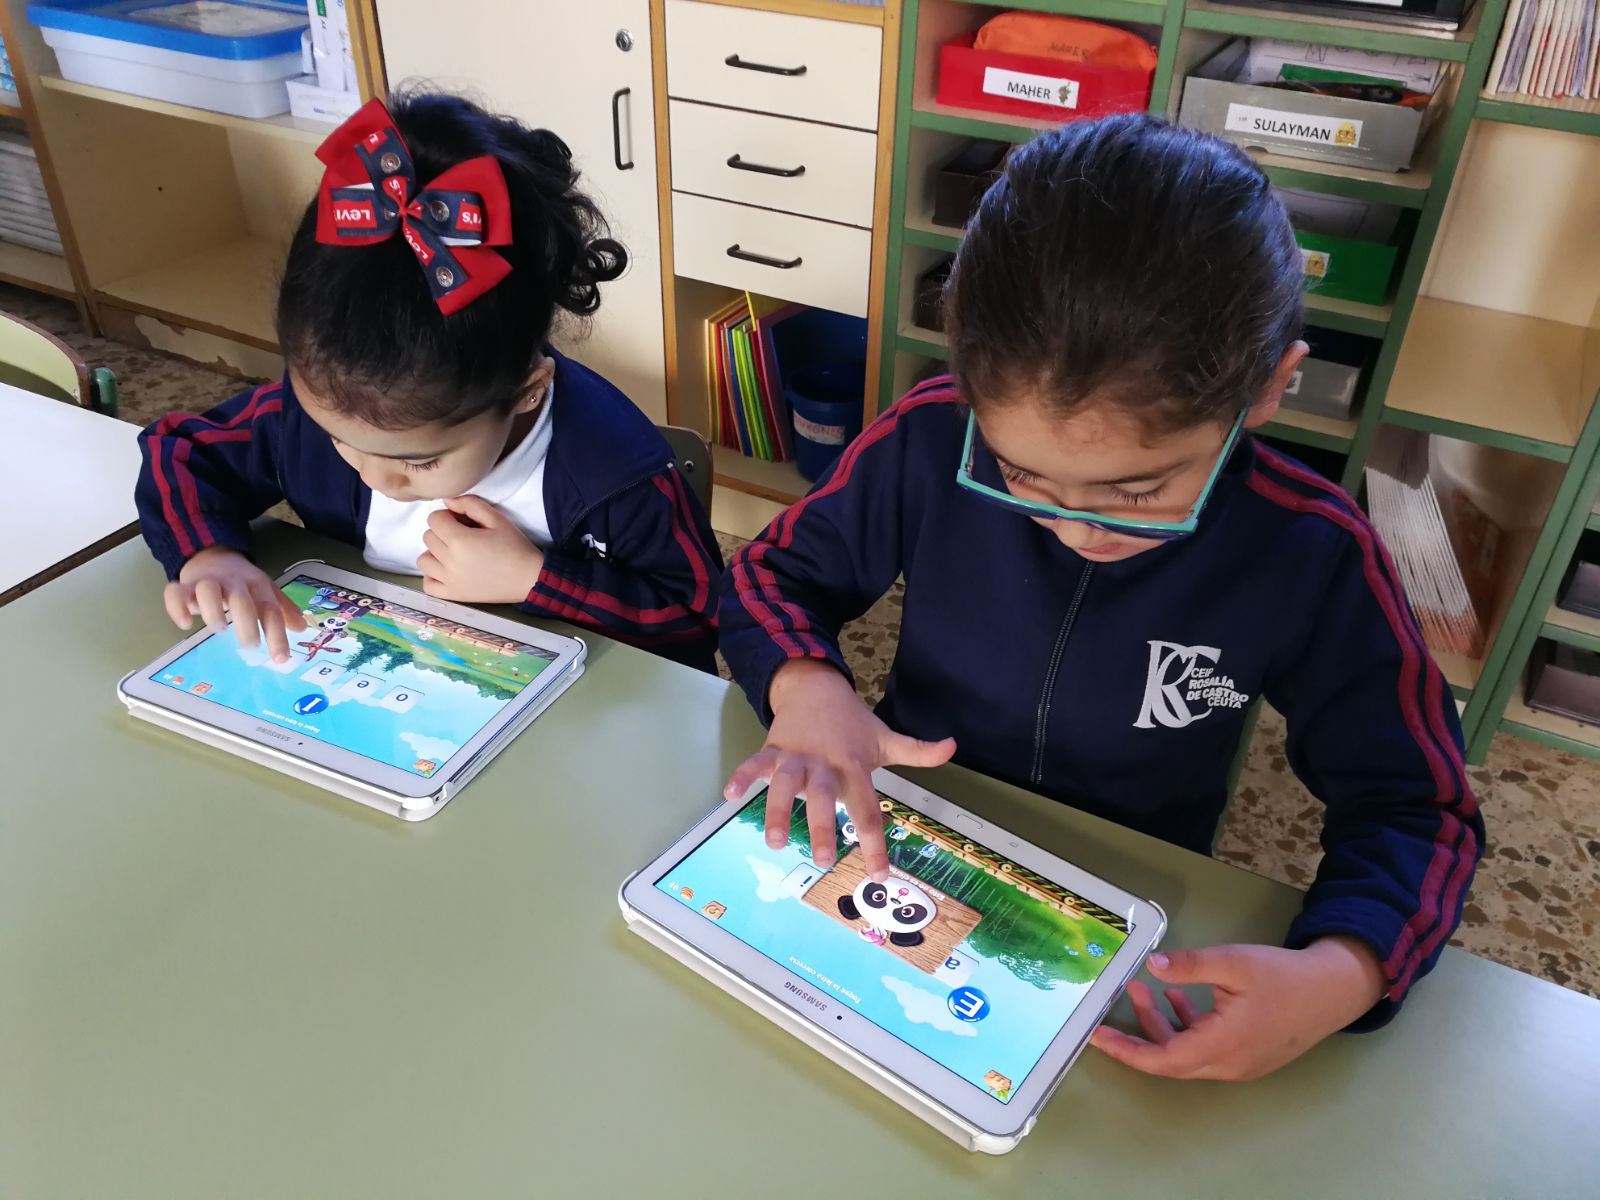 Los alumnos/as de infantil aprenden lectoescritura con la utilización de las tablets, algo que les encanta y ayuda bastante de forma lúdica. Por Inmaculada Carrasco Quero.